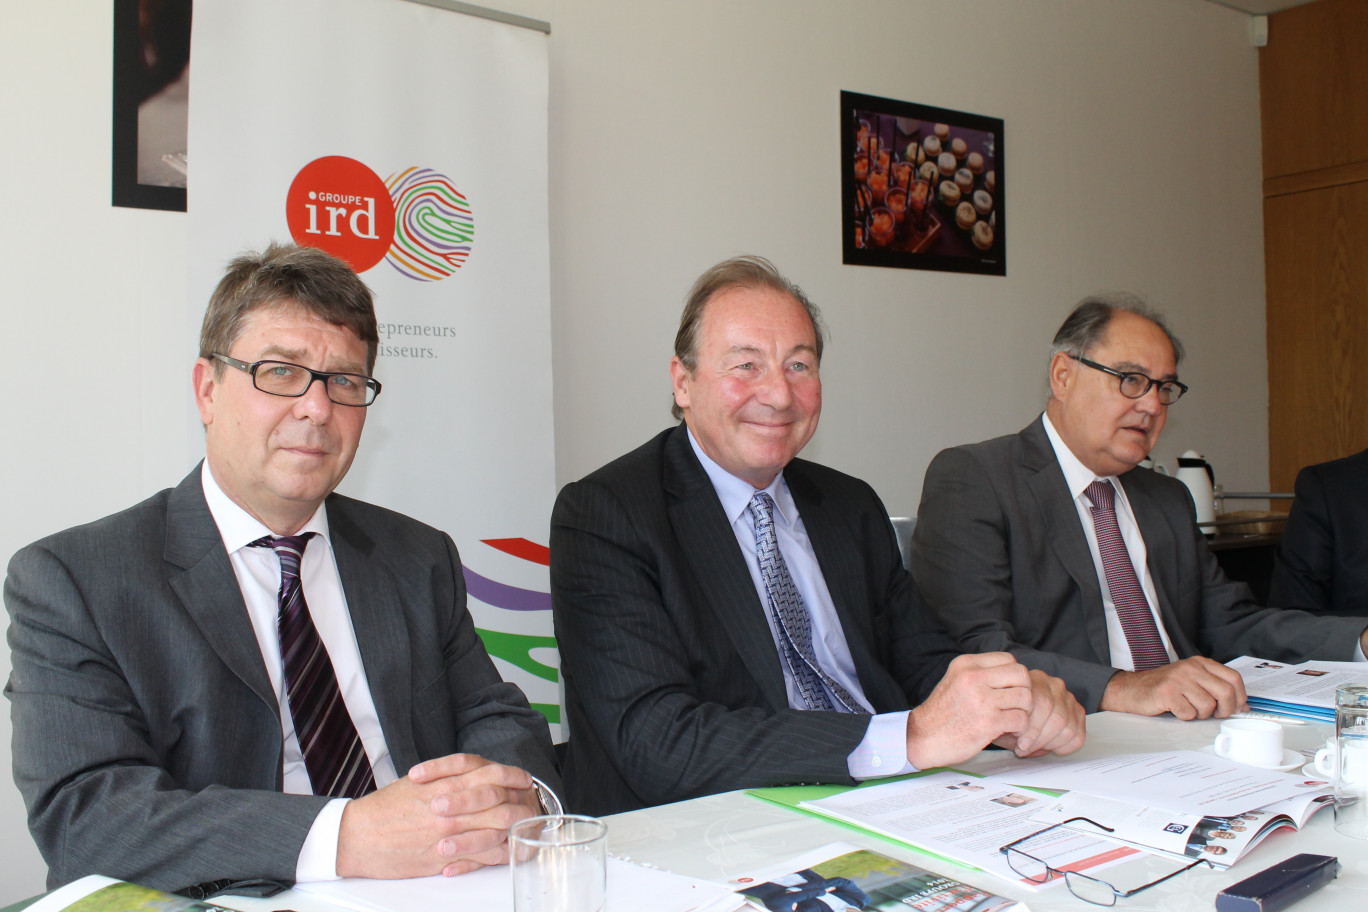 De gauche à droite, Thierry Dujardin, directeur général adjoint, Gérard Meauxsoone, président, et Marc Verly, directeur général du Groupe IRD.